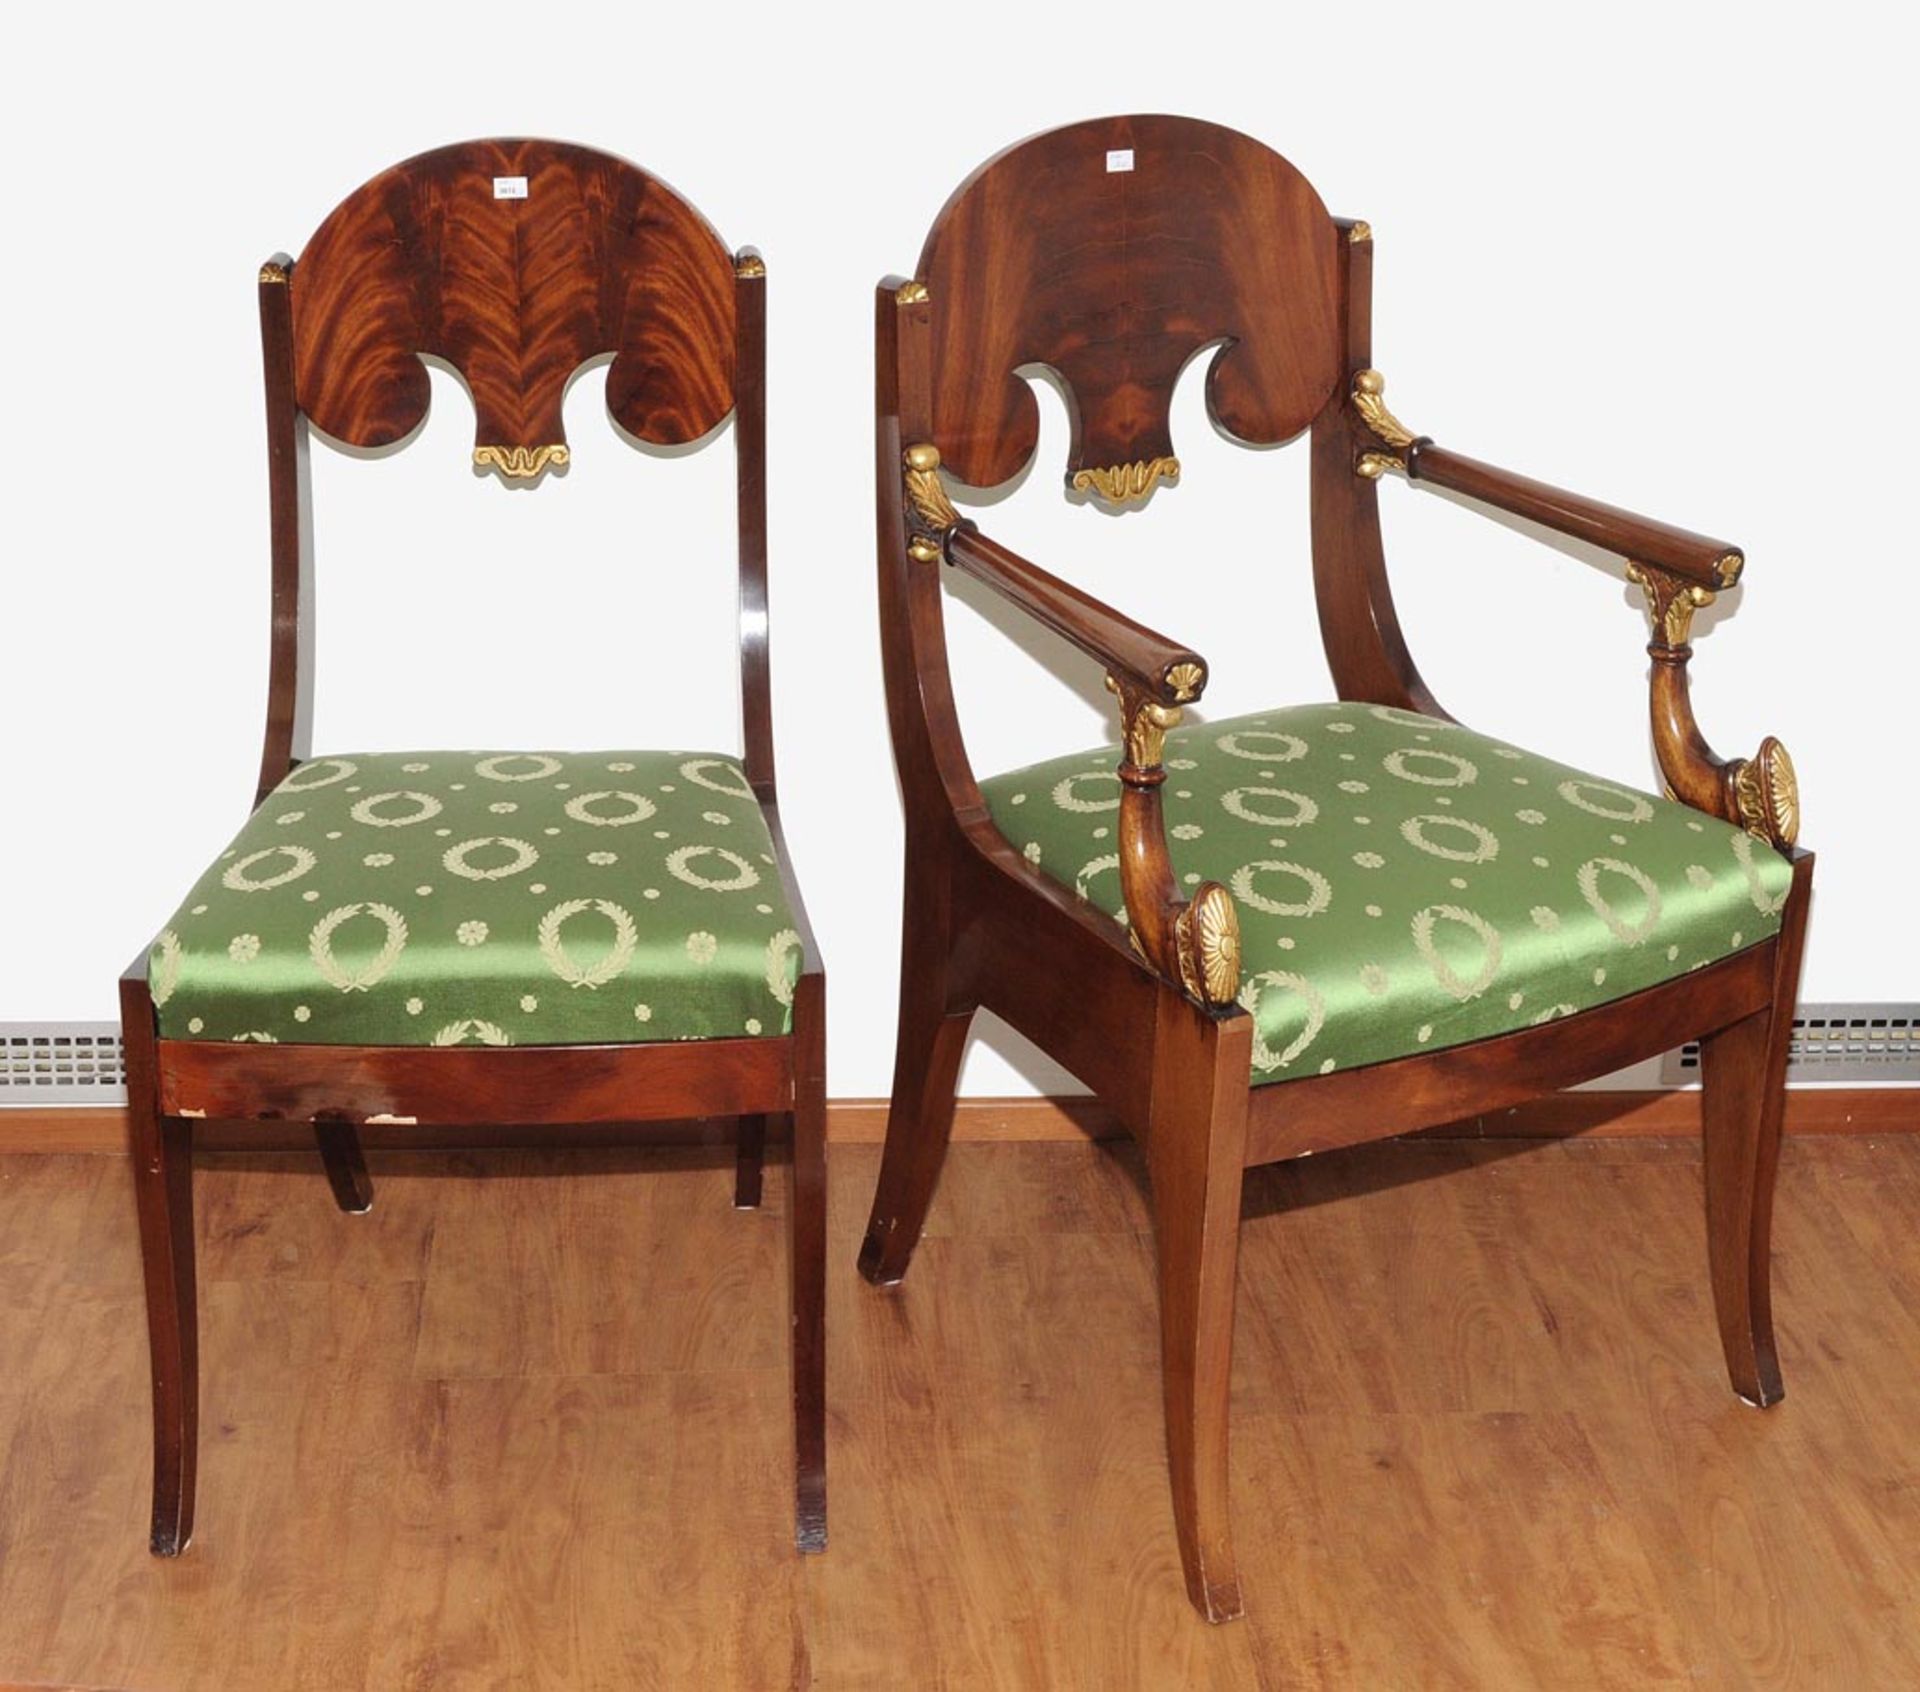 Serie von 6 Stühlen und 2 Armlehnstühlen Empirestil, um 1920. Mahagoni. Frontal leicht gerundete